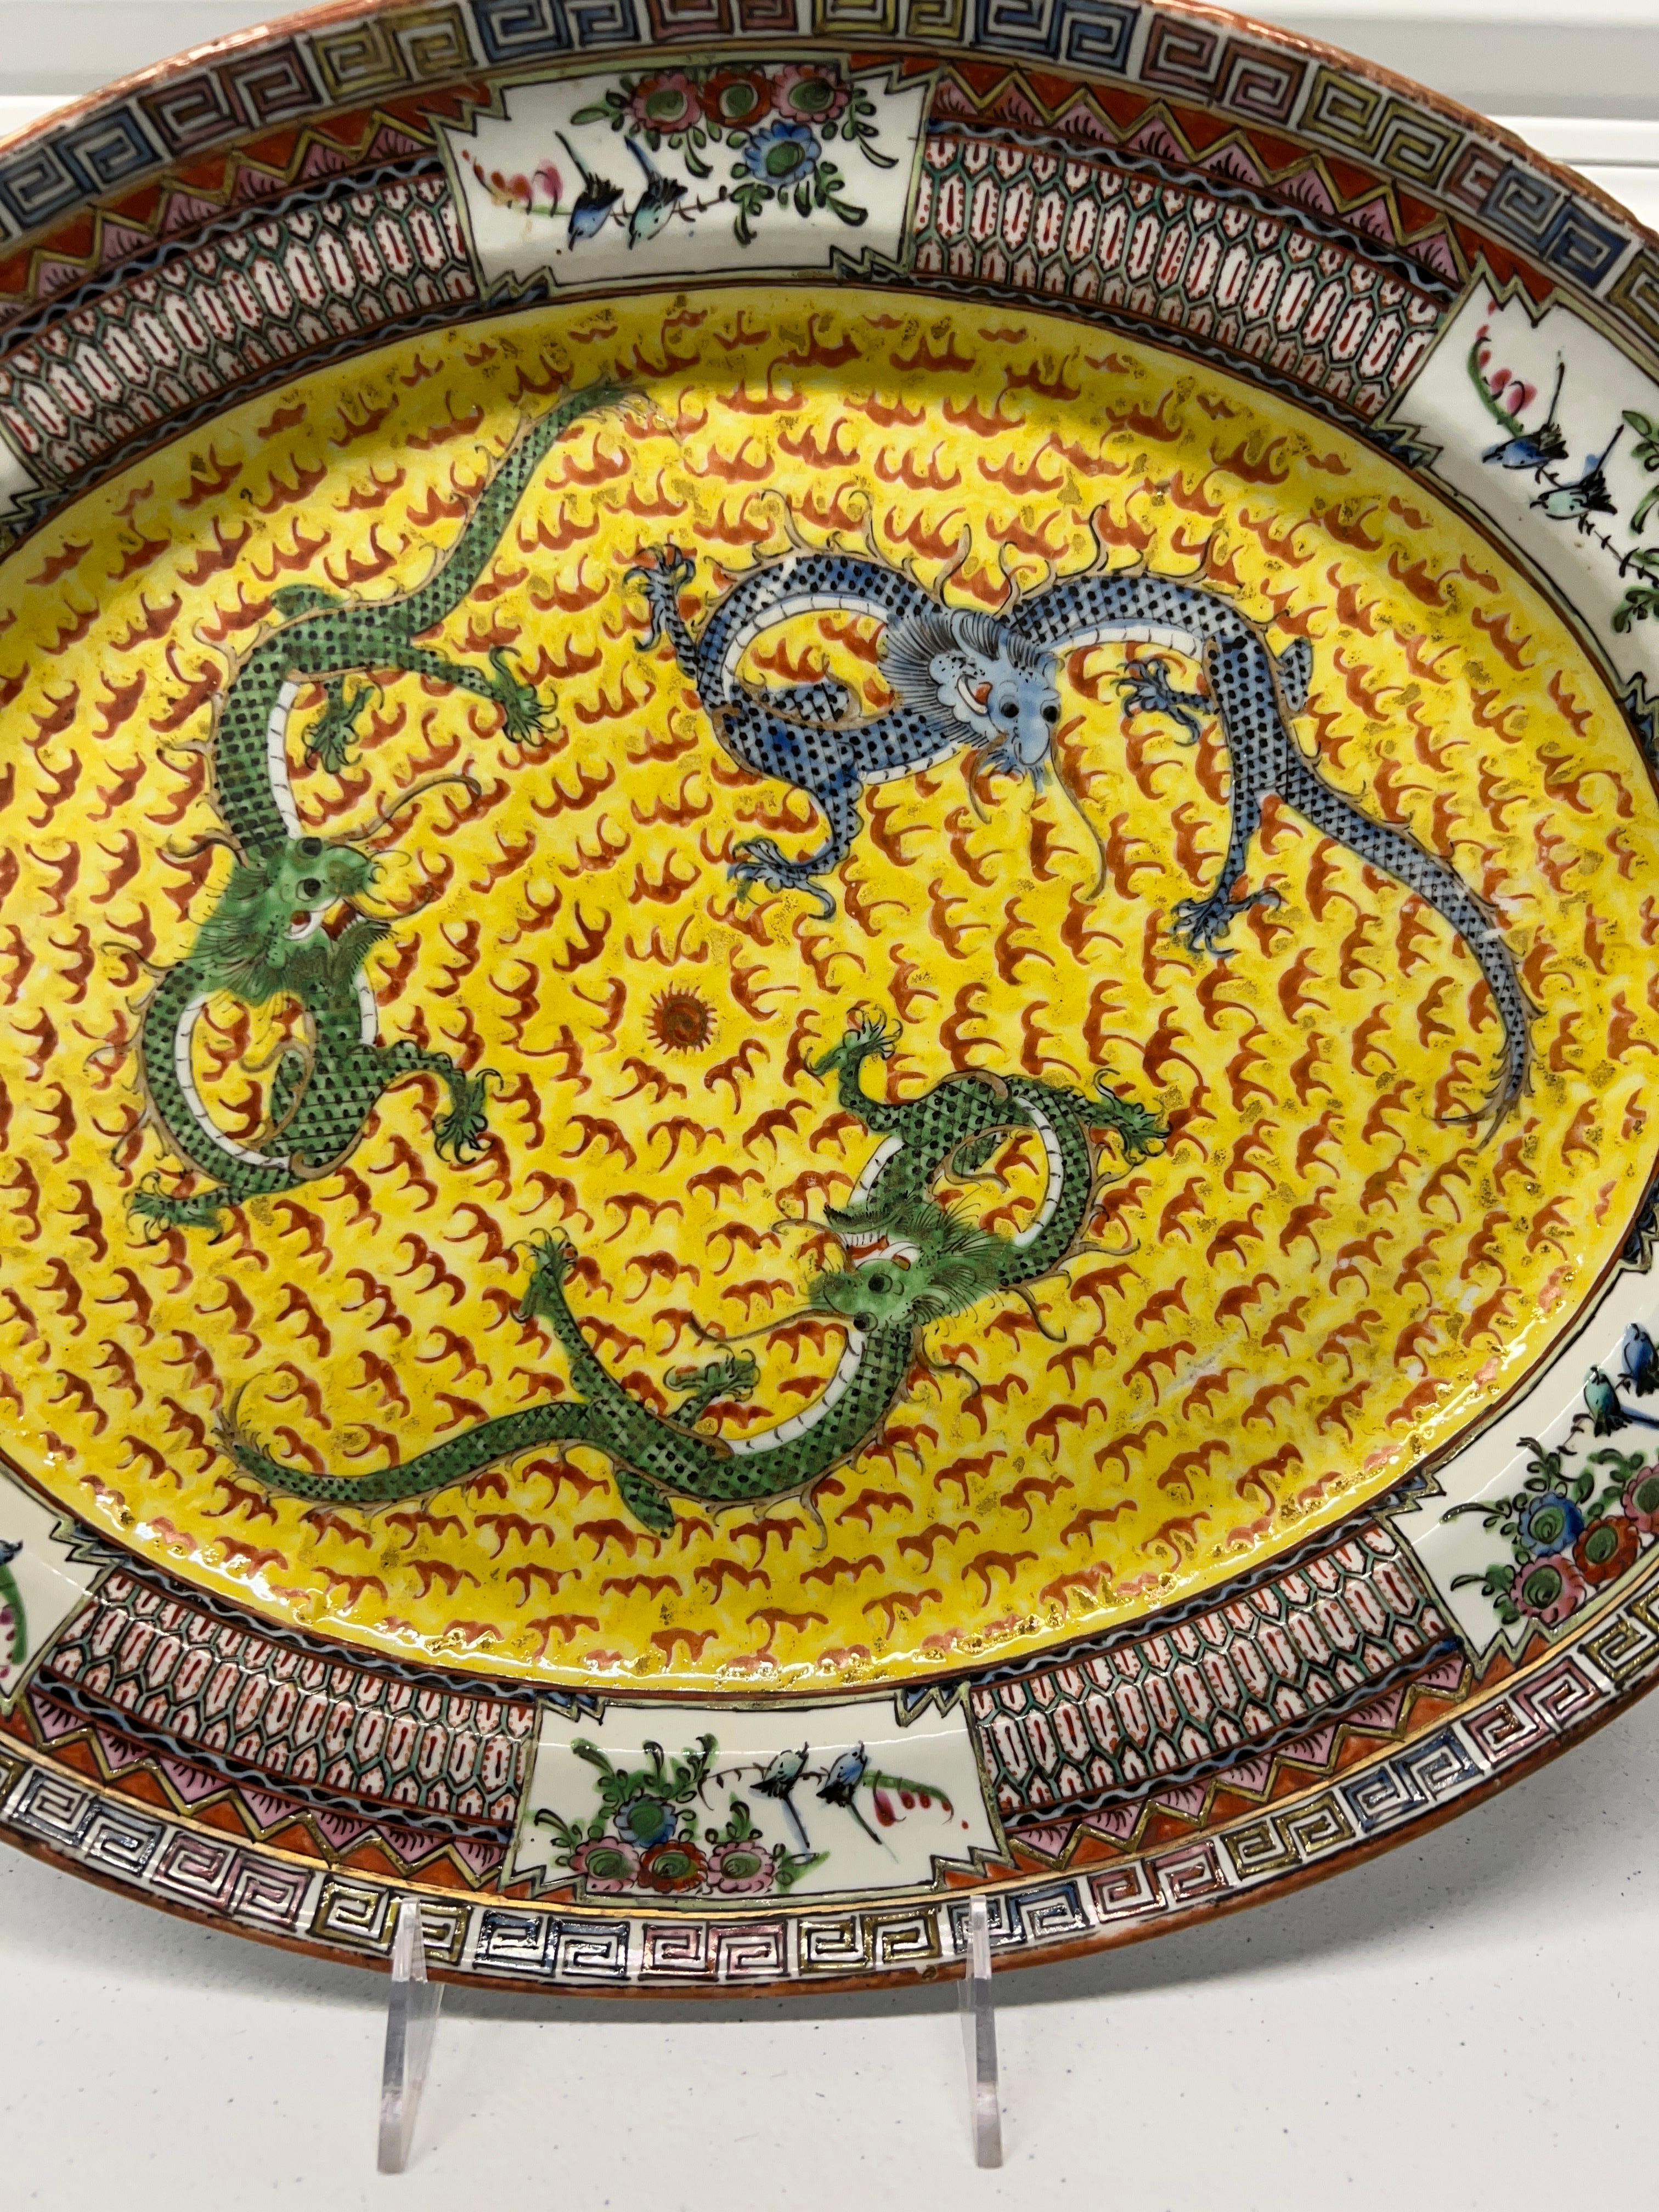 Chine, début ou milieu du XIXe siècle.

Un plat ancien de la famille jaune décoré de trois dragons impériaux chassant la perle centrale. Bordure émaillée de bonne qualité, avec une bordure en forme de clé grecque. Marqué sur le fond non émaillé